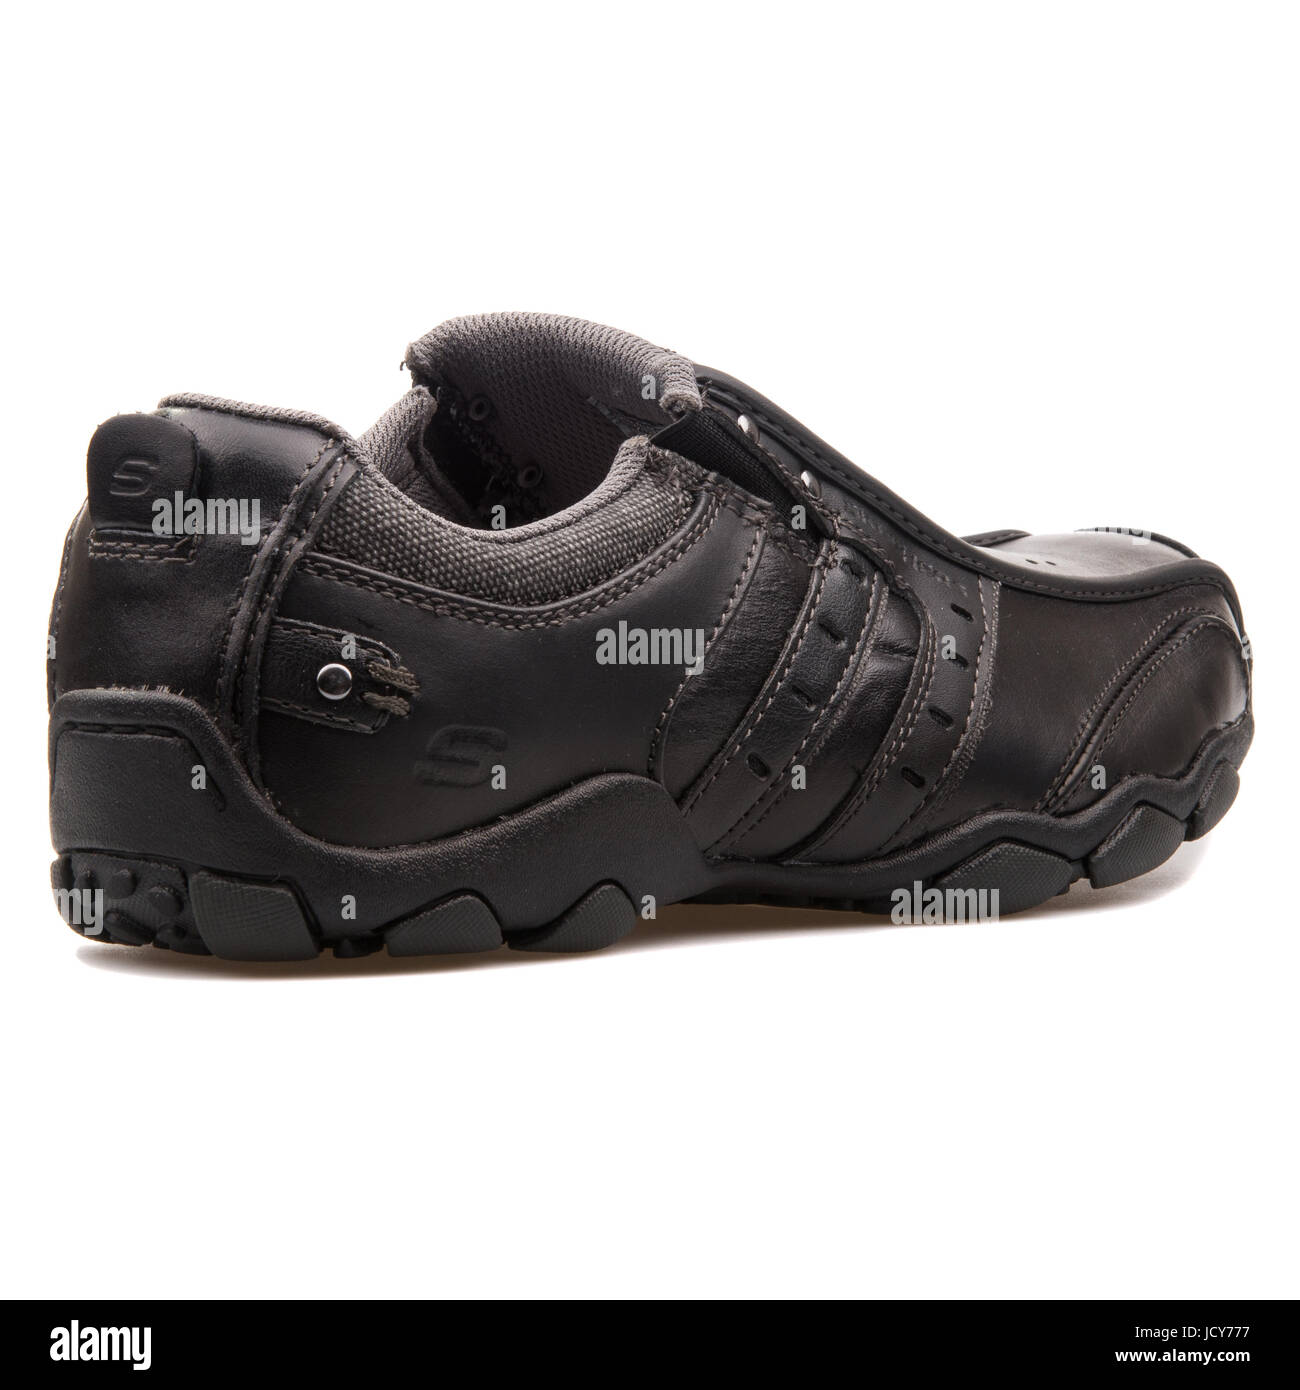 Udfør præsentation Selvforkælelse Skechers Diameter Black Leather Men's Shoes - 61779-BLK Stock Photo - Alamy